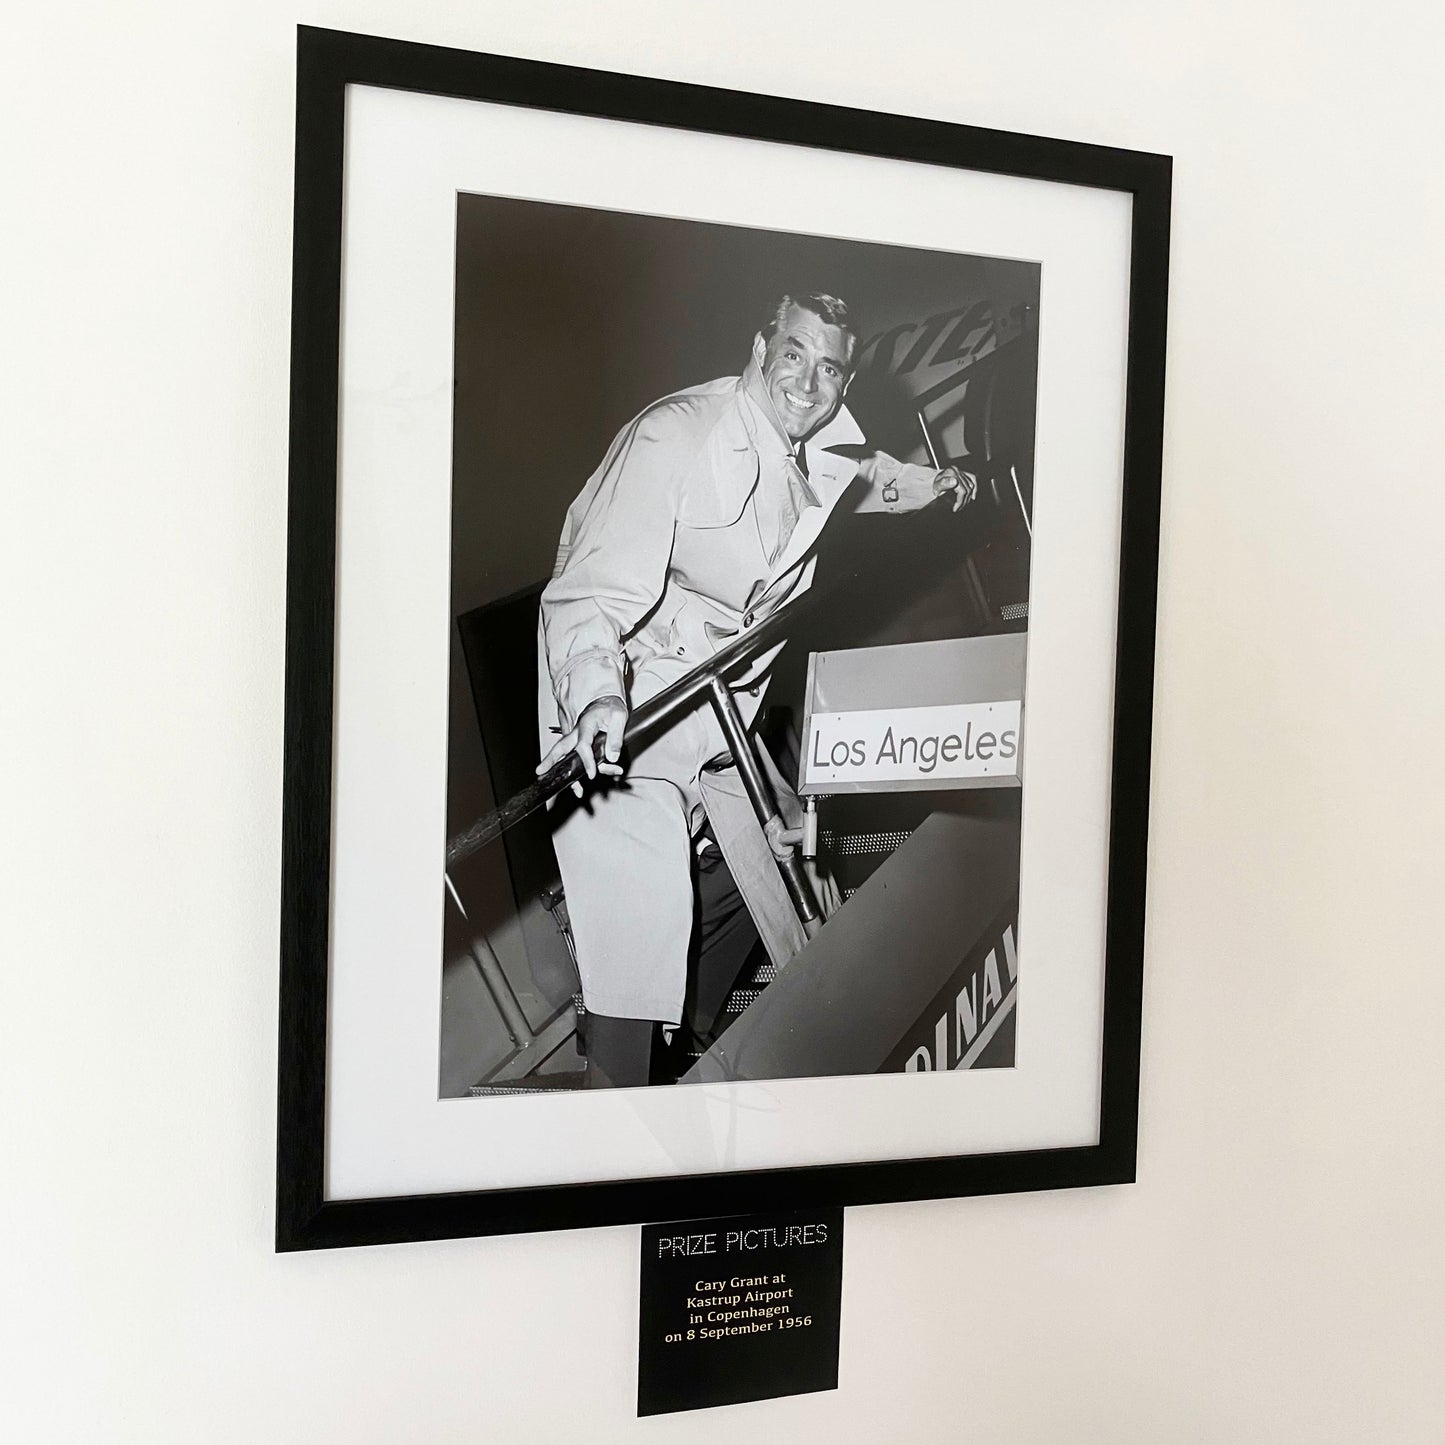 Cary Grant Framed Photo Print in Copenhagen 1956